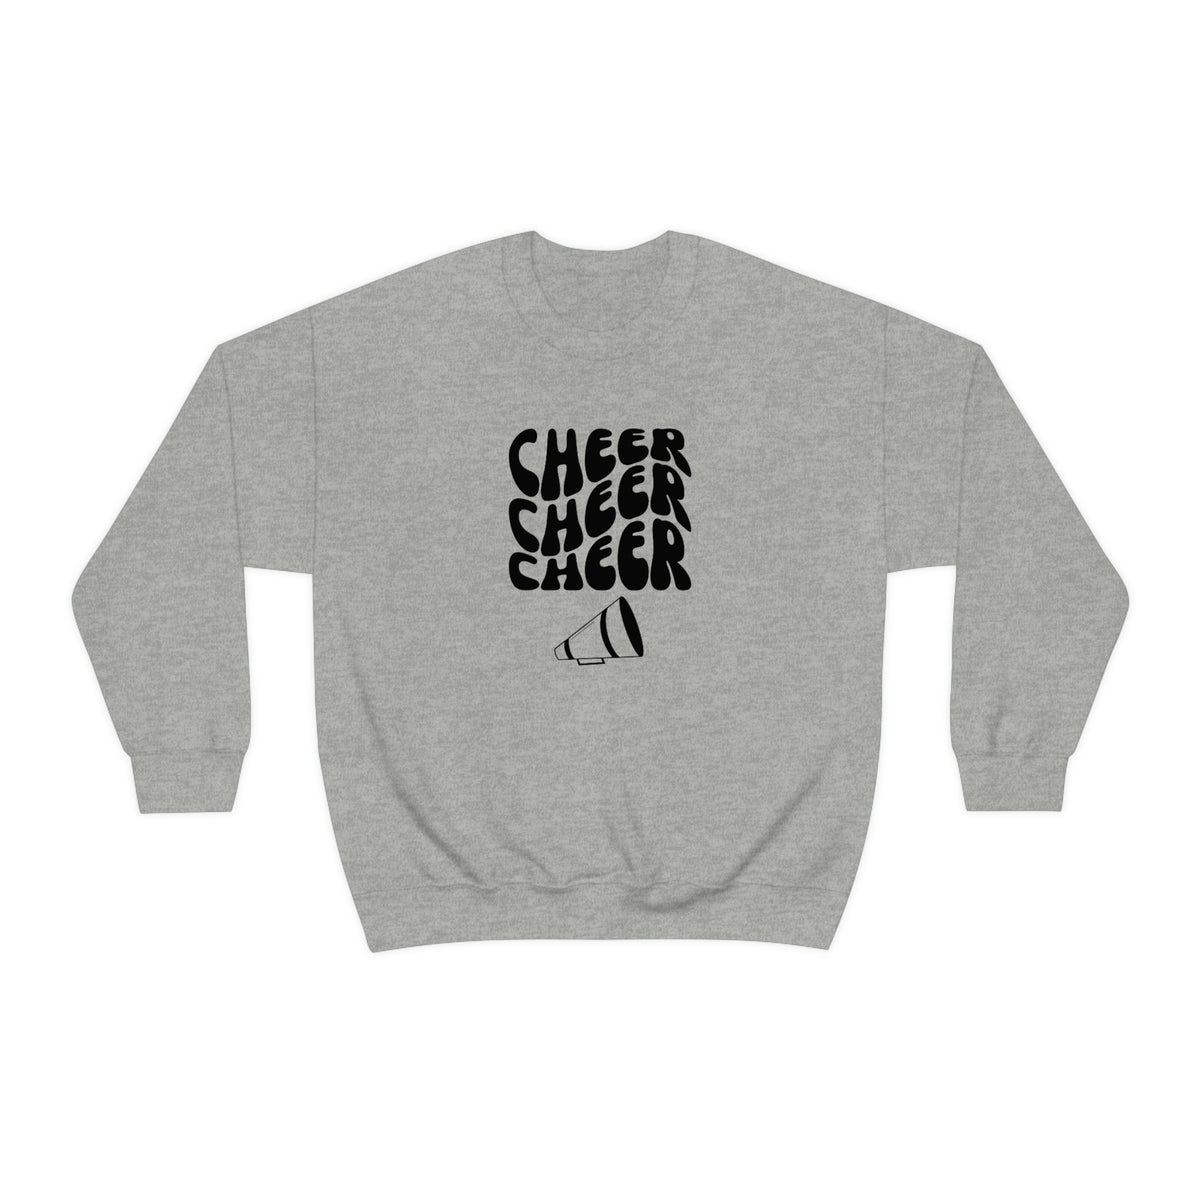 Cheer Sweatshirt, Cheerleading Crewneck, Cheer Lovers Gift, Cheer Mom, Cheer Coach, Cheerleader Top